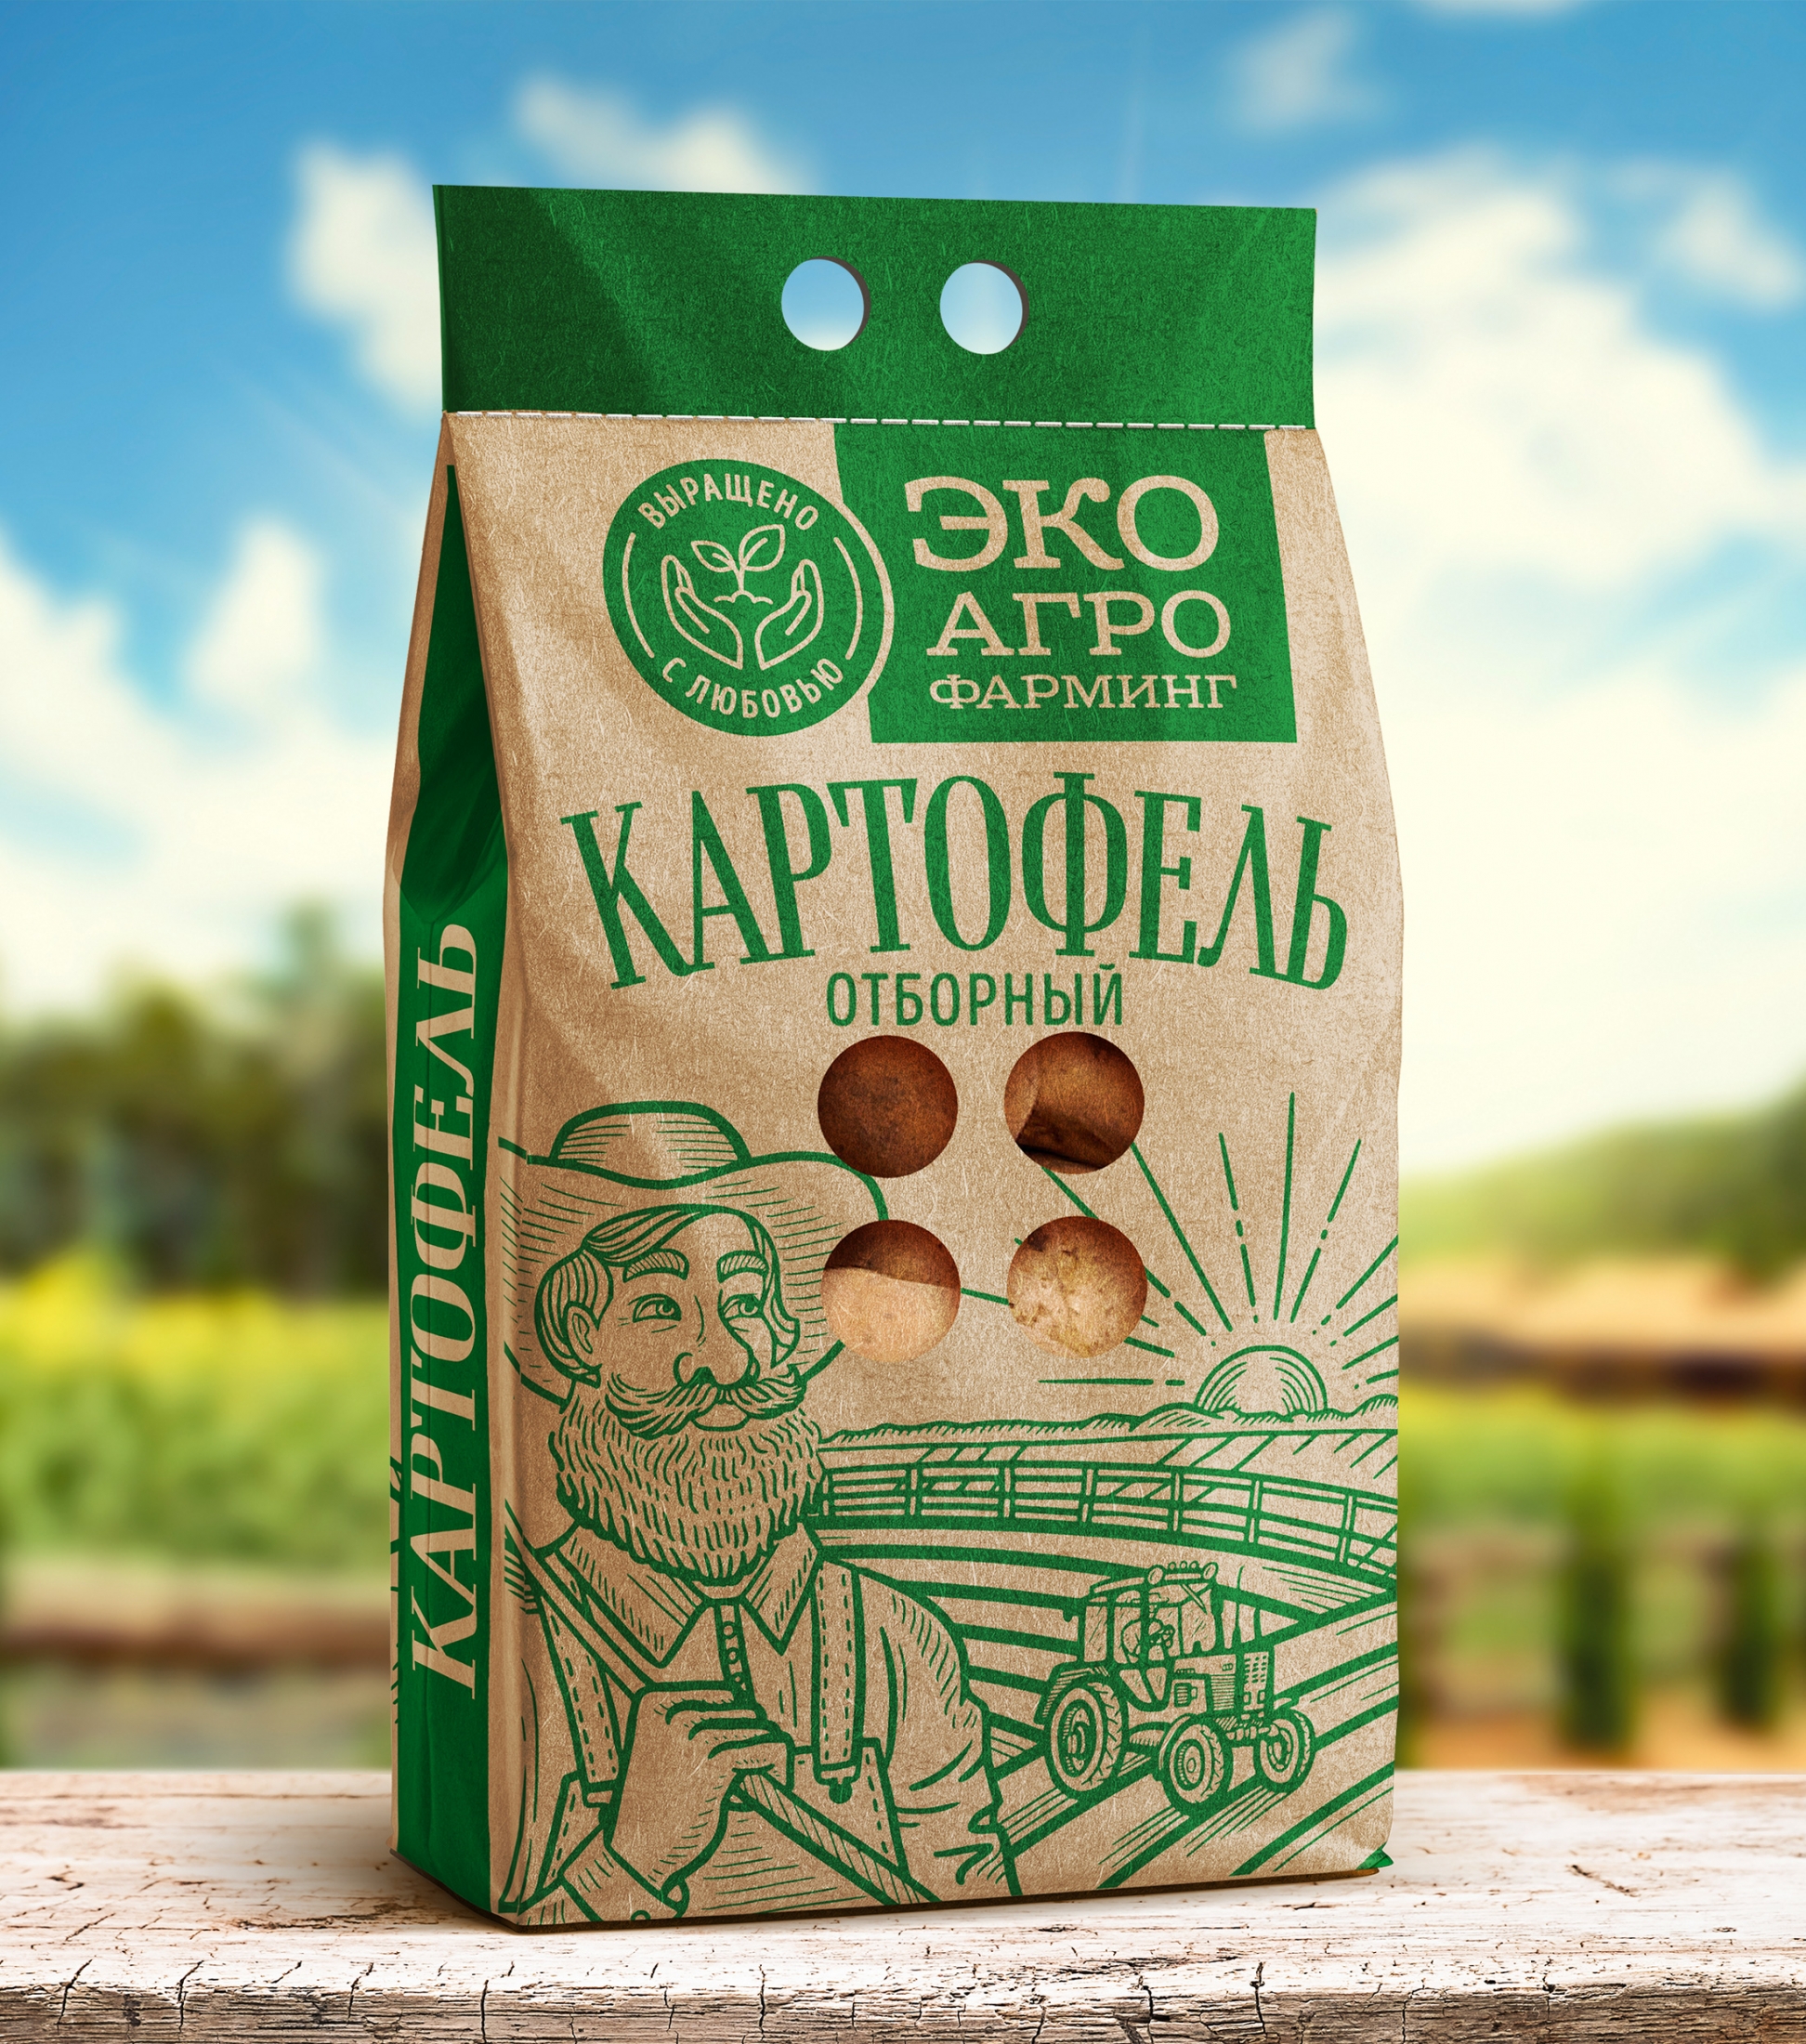 Дизайн упаковки картофеля ЭКО АГРО Фарминг